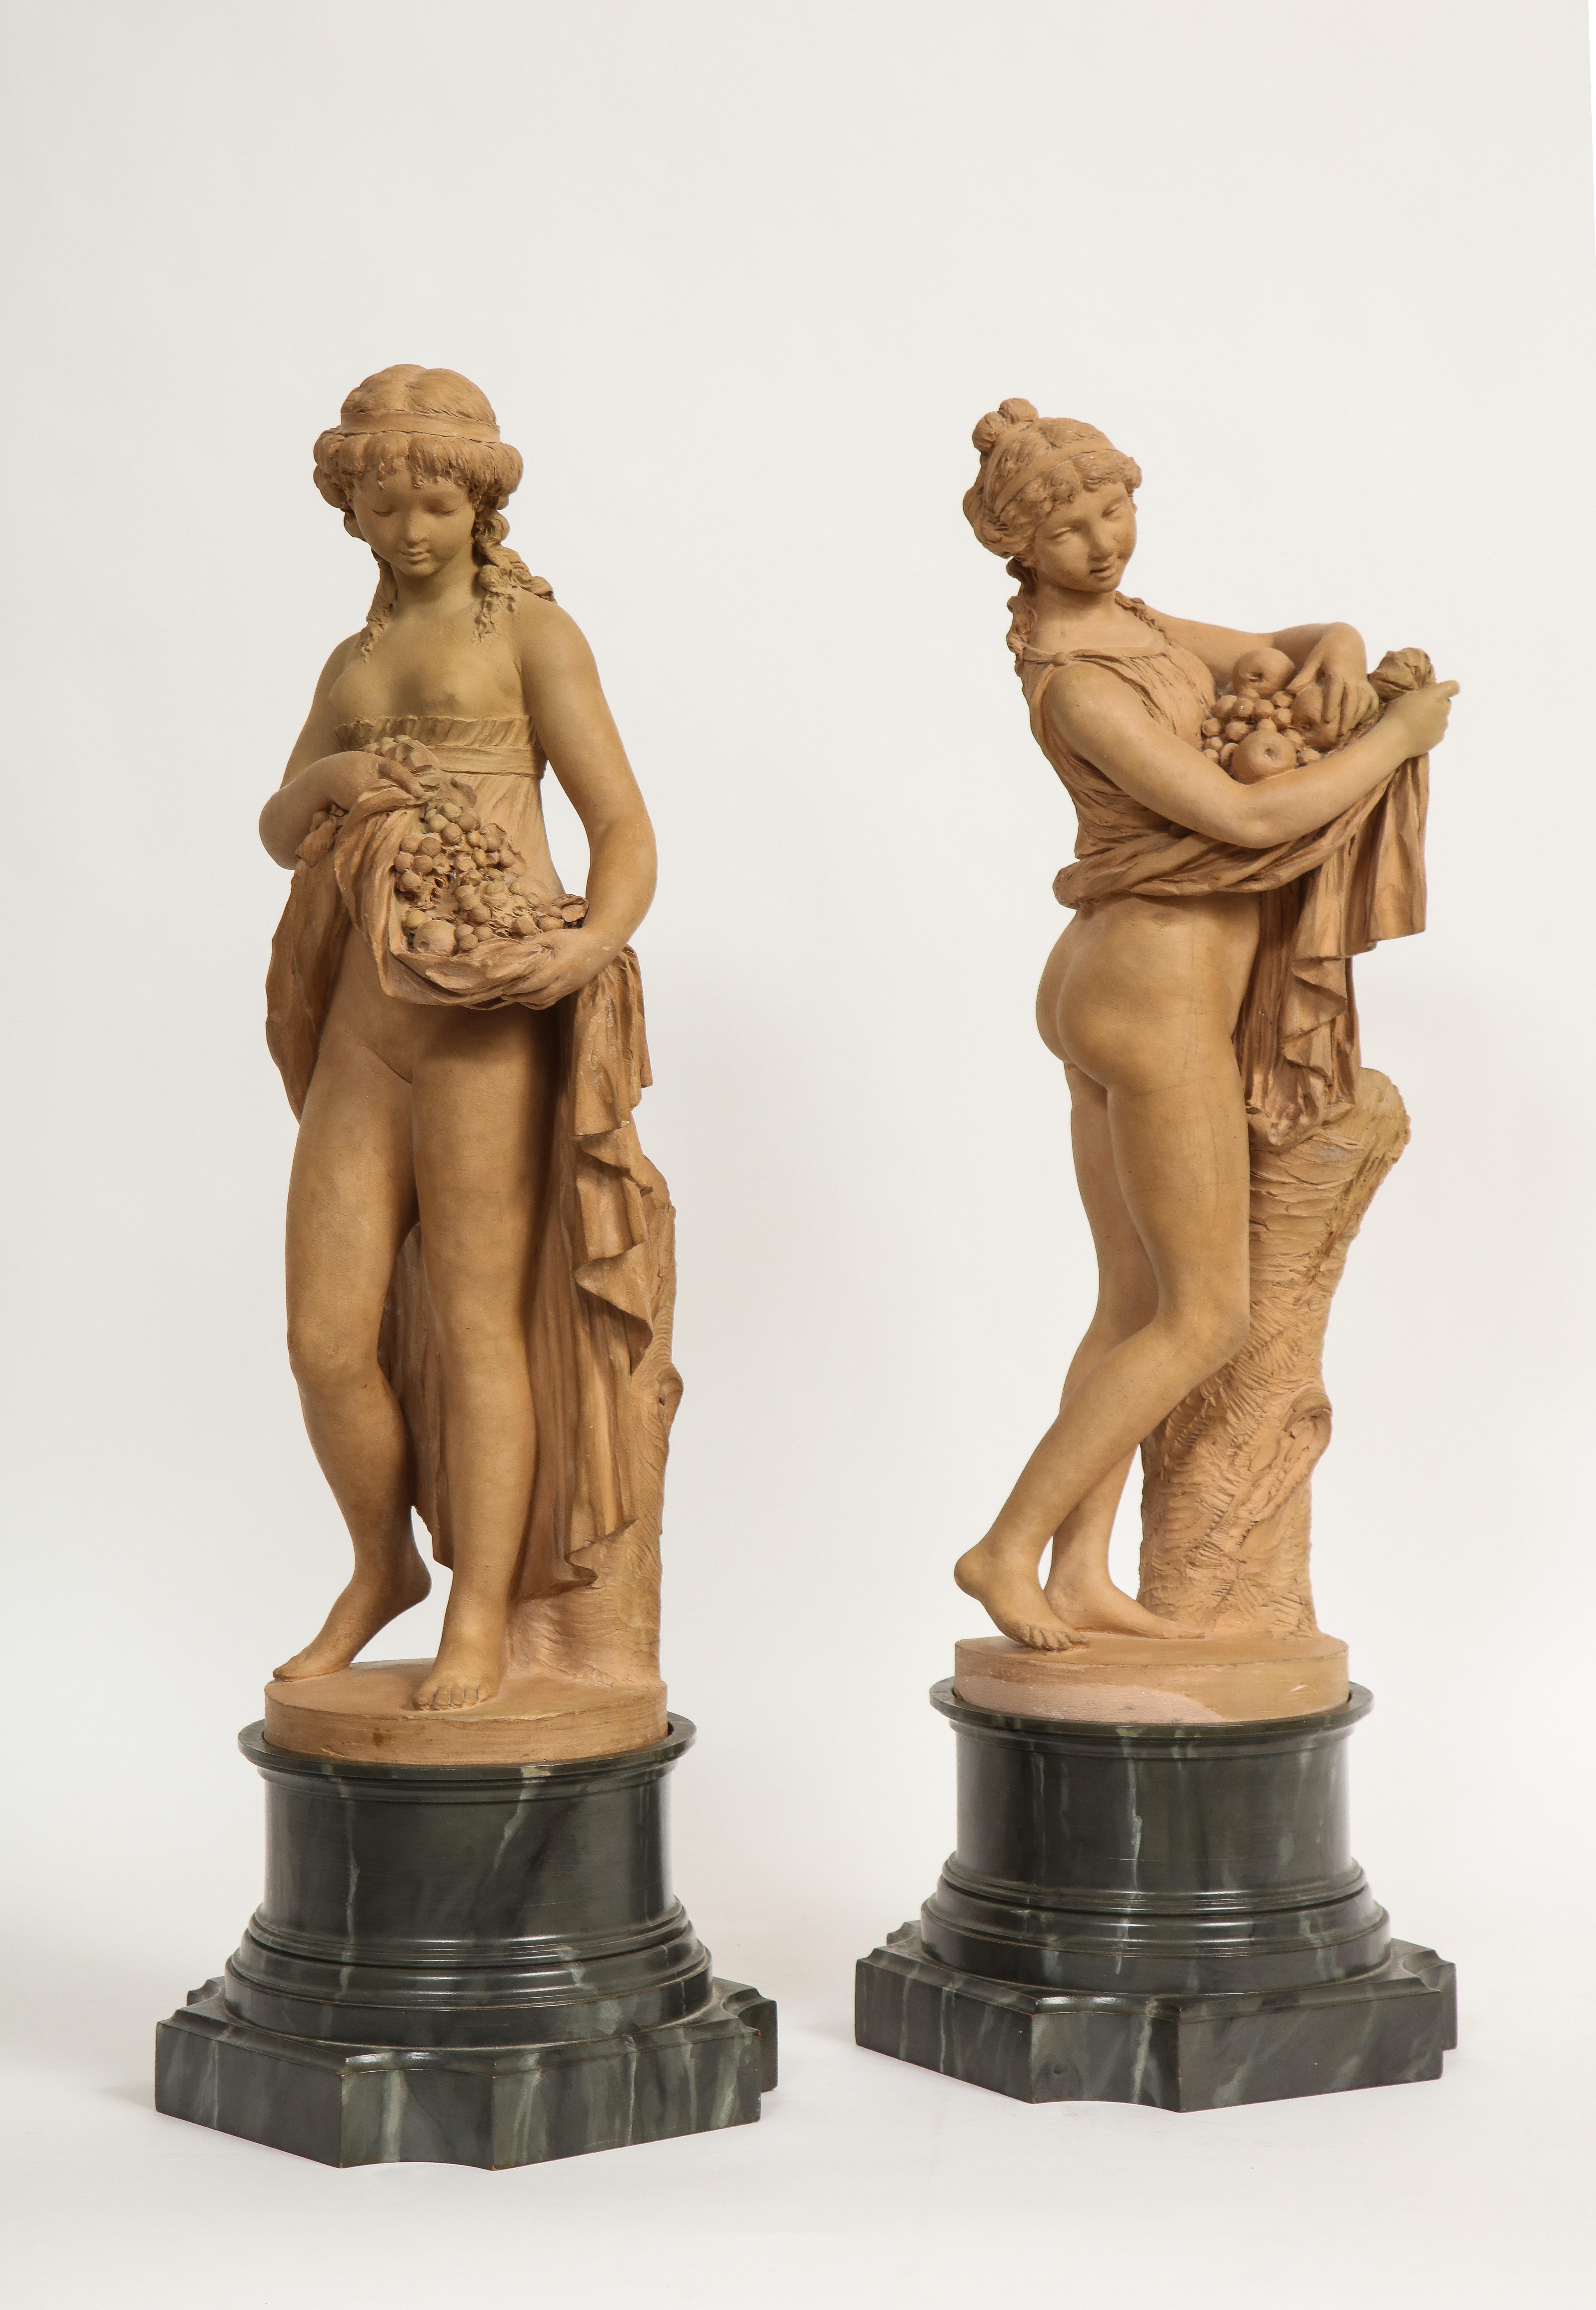 Une fantastique paire de figures en terre cuite française du 18e/19e siècle représentant Pomone et une jeune fille portant des fruits dans sa jupe, signées Clodion. Ces exceptionnelles figures en terre cuite représentant deux belles femmes sont